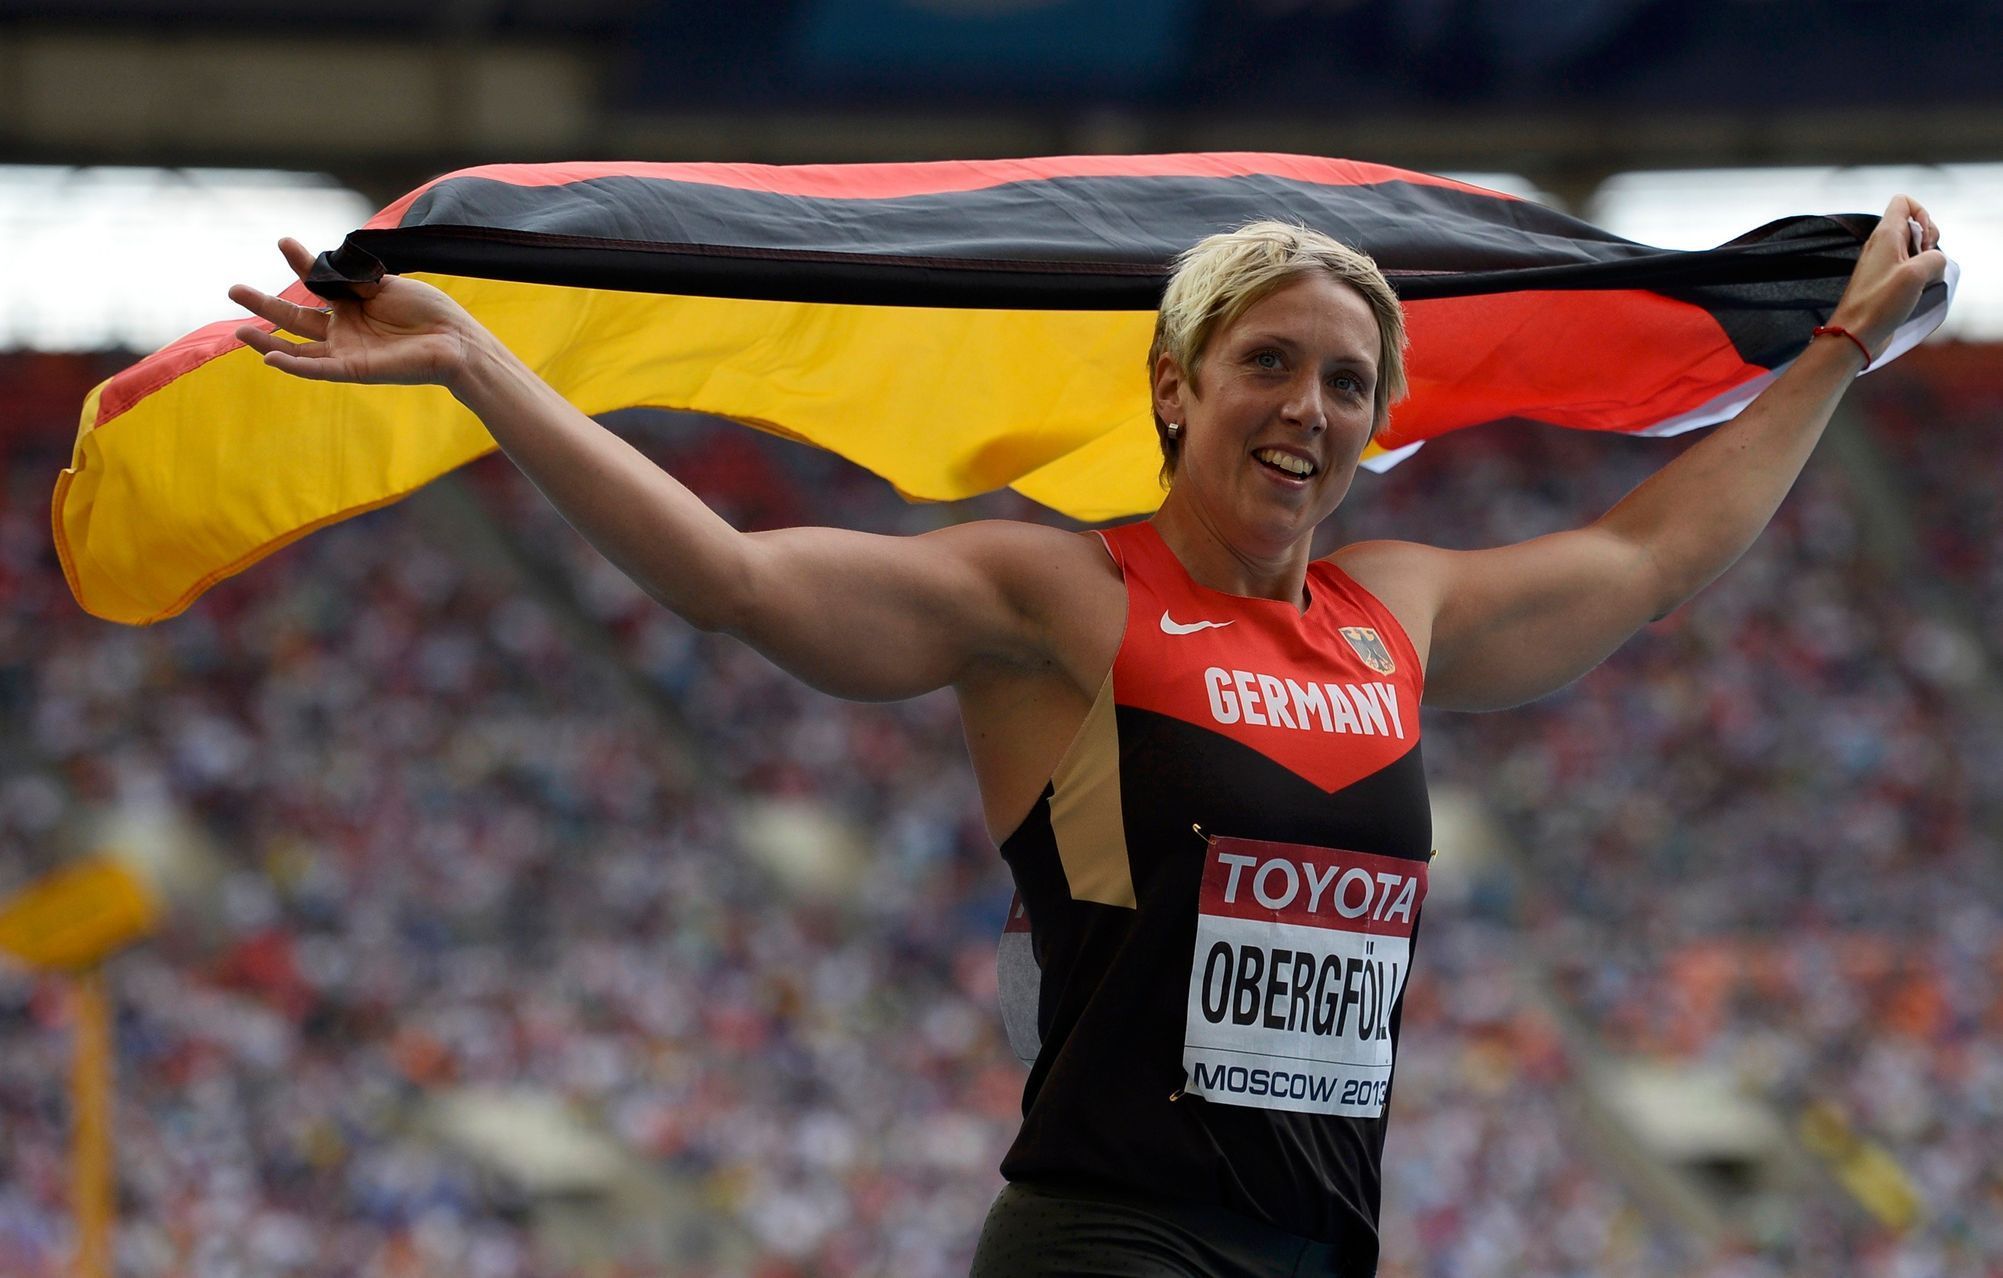 MS v atletice 2013, oštěp žen - finále: Christina Obergföllová